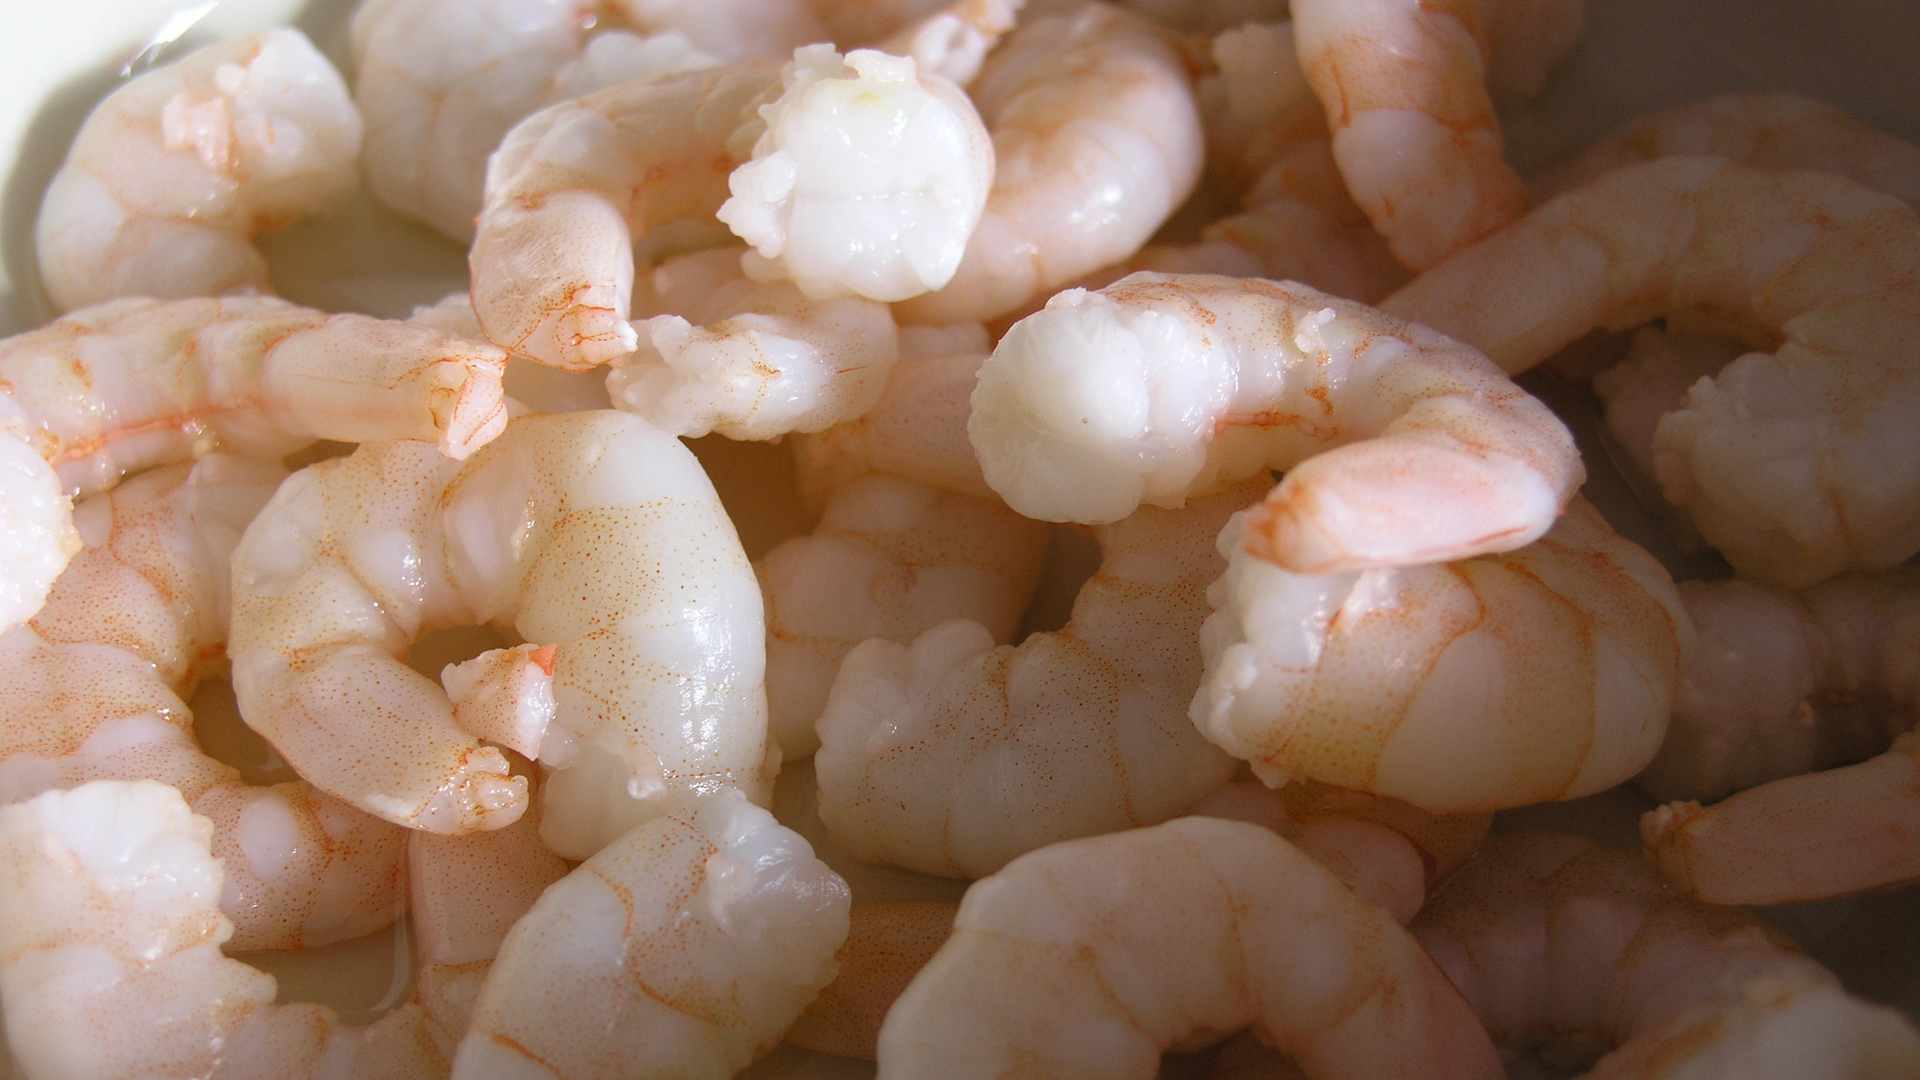 Fotostrecke Appetitanreger 06: Garnelen / Shrimps